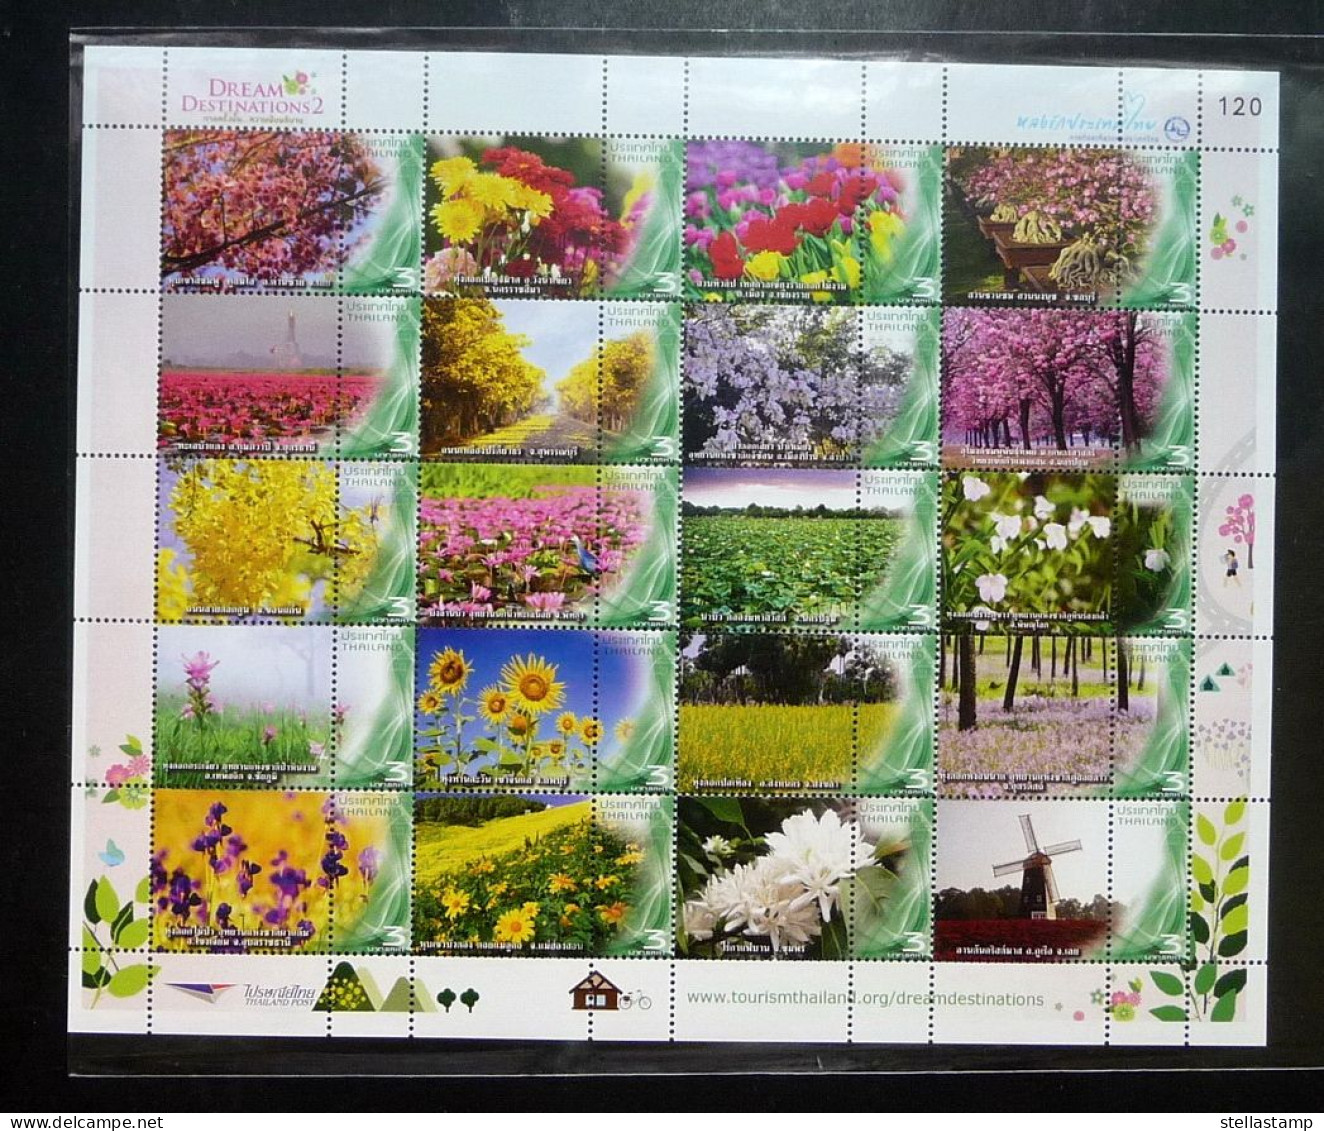 Thailand Stamp Personalized 2014 Dream Destinations - Tourism Garden - Thailand